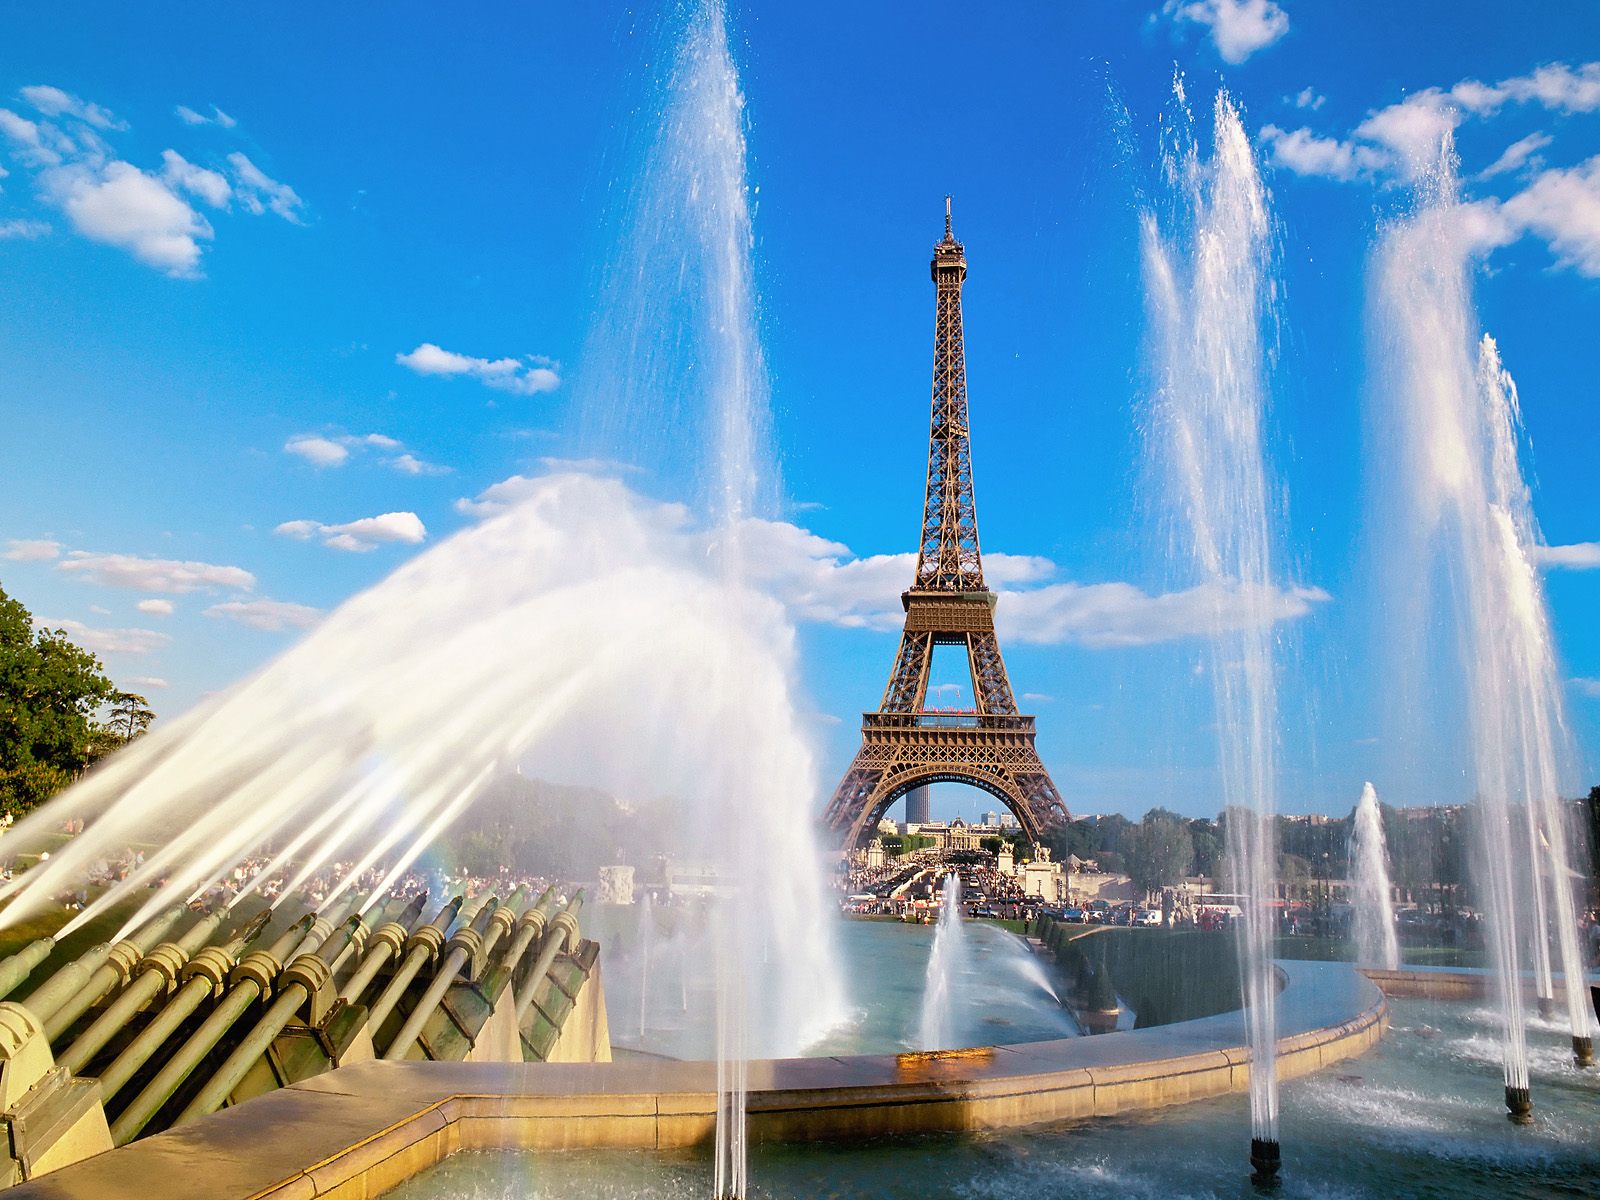 Eiffel Tower Fountain Paris918921604 - Eiffel Tower Fountain Paris - Tower, Paris, Fountain, Eiffel, Alps